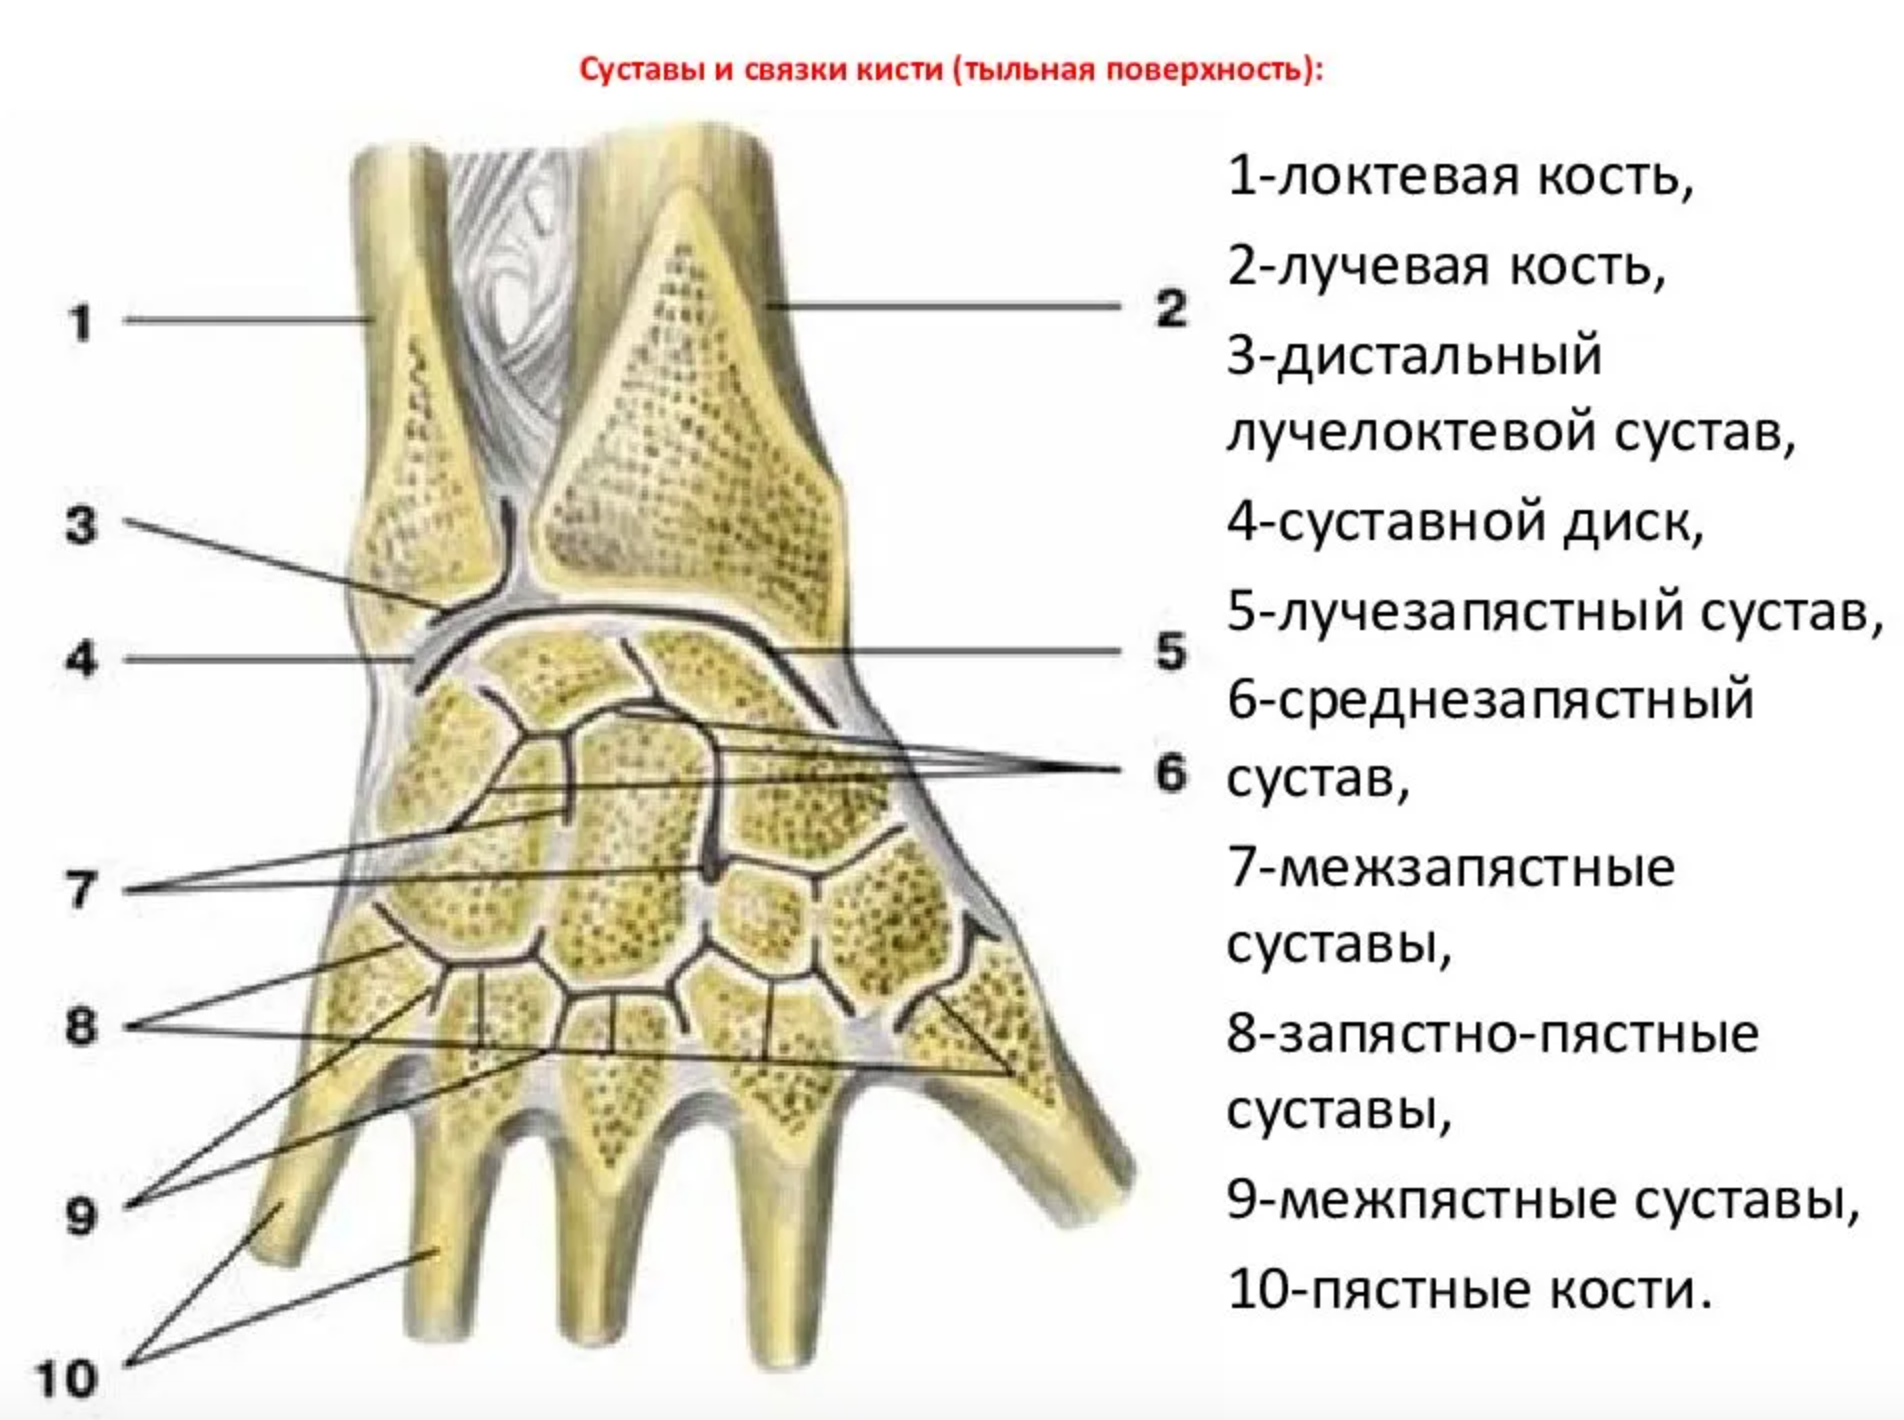 Кость запястья тип кости. Суставной диск лучезапястного сустава. Дистальный лучелоктевой сустав анатомия связки. Среднезапястный сустав связки. Лучезапястный сустав анатомия суставные поверхности.